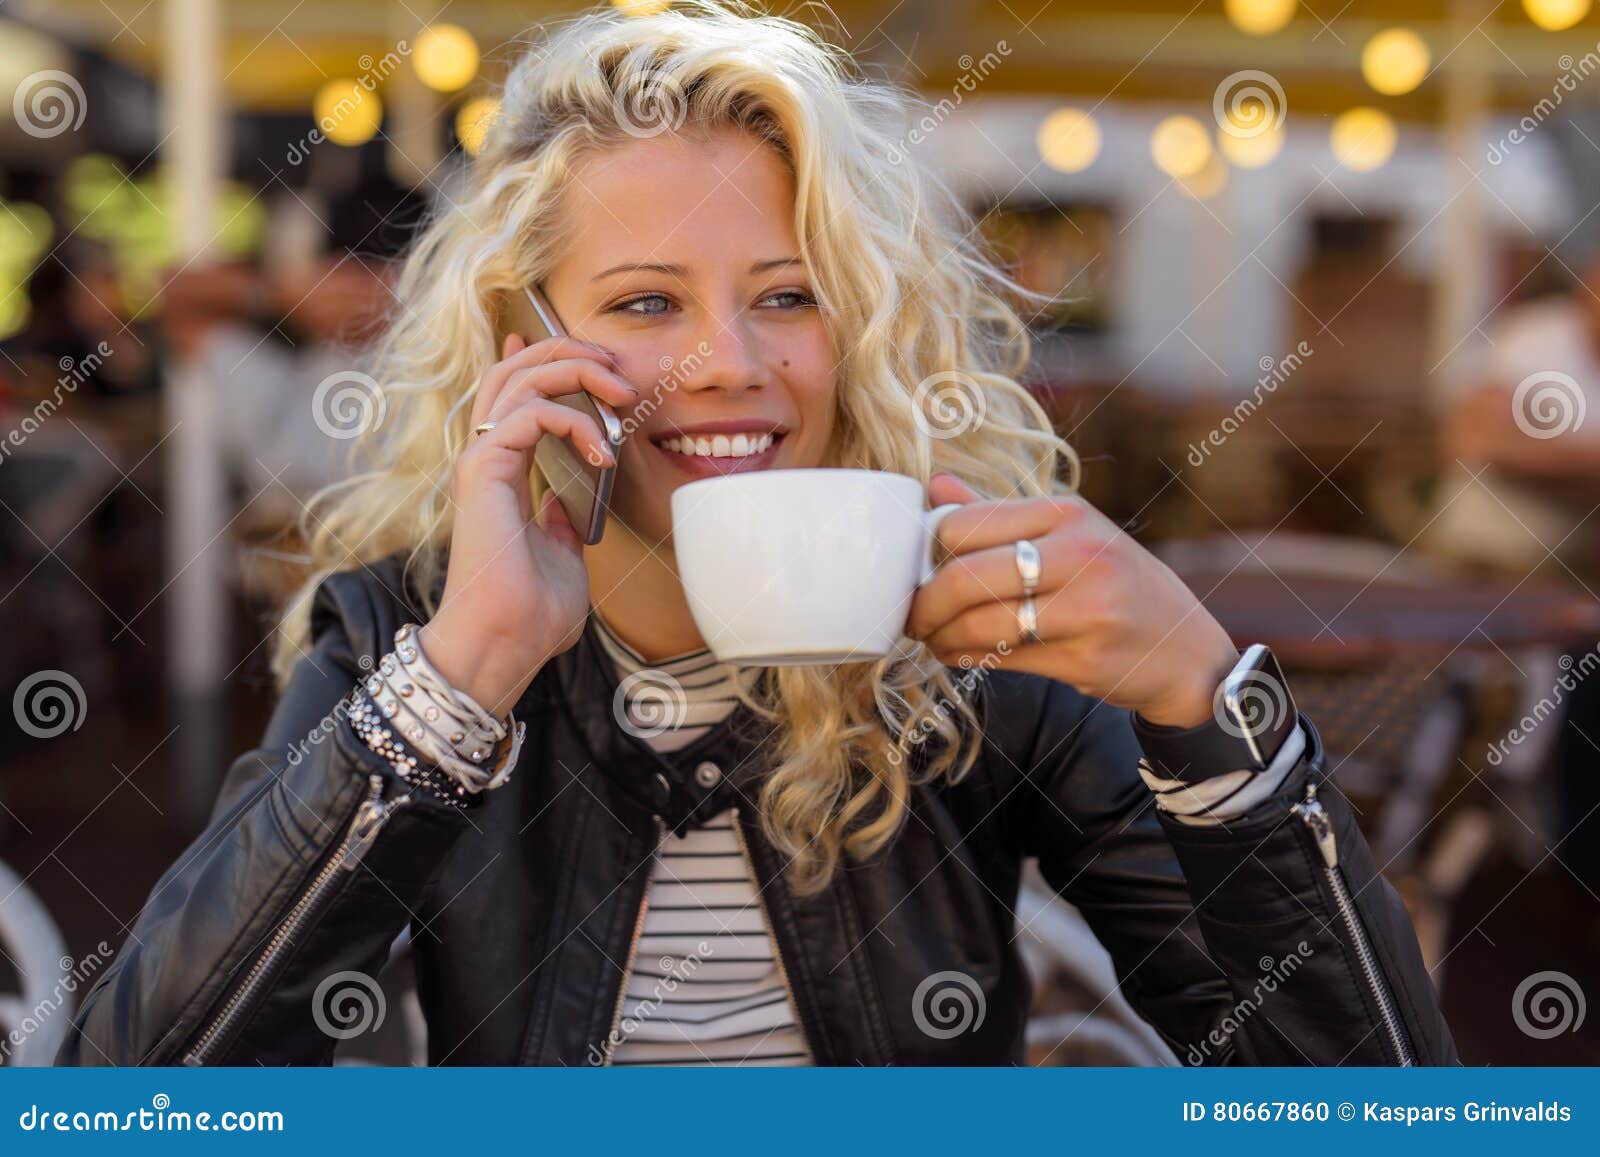 Blonde drink. Взрослая женщина пьет кофе. Красивая женщина 40 пьет кофе. Блондинка пьет кофе без лица. Девушка пьет кофе и мобильный телефон.